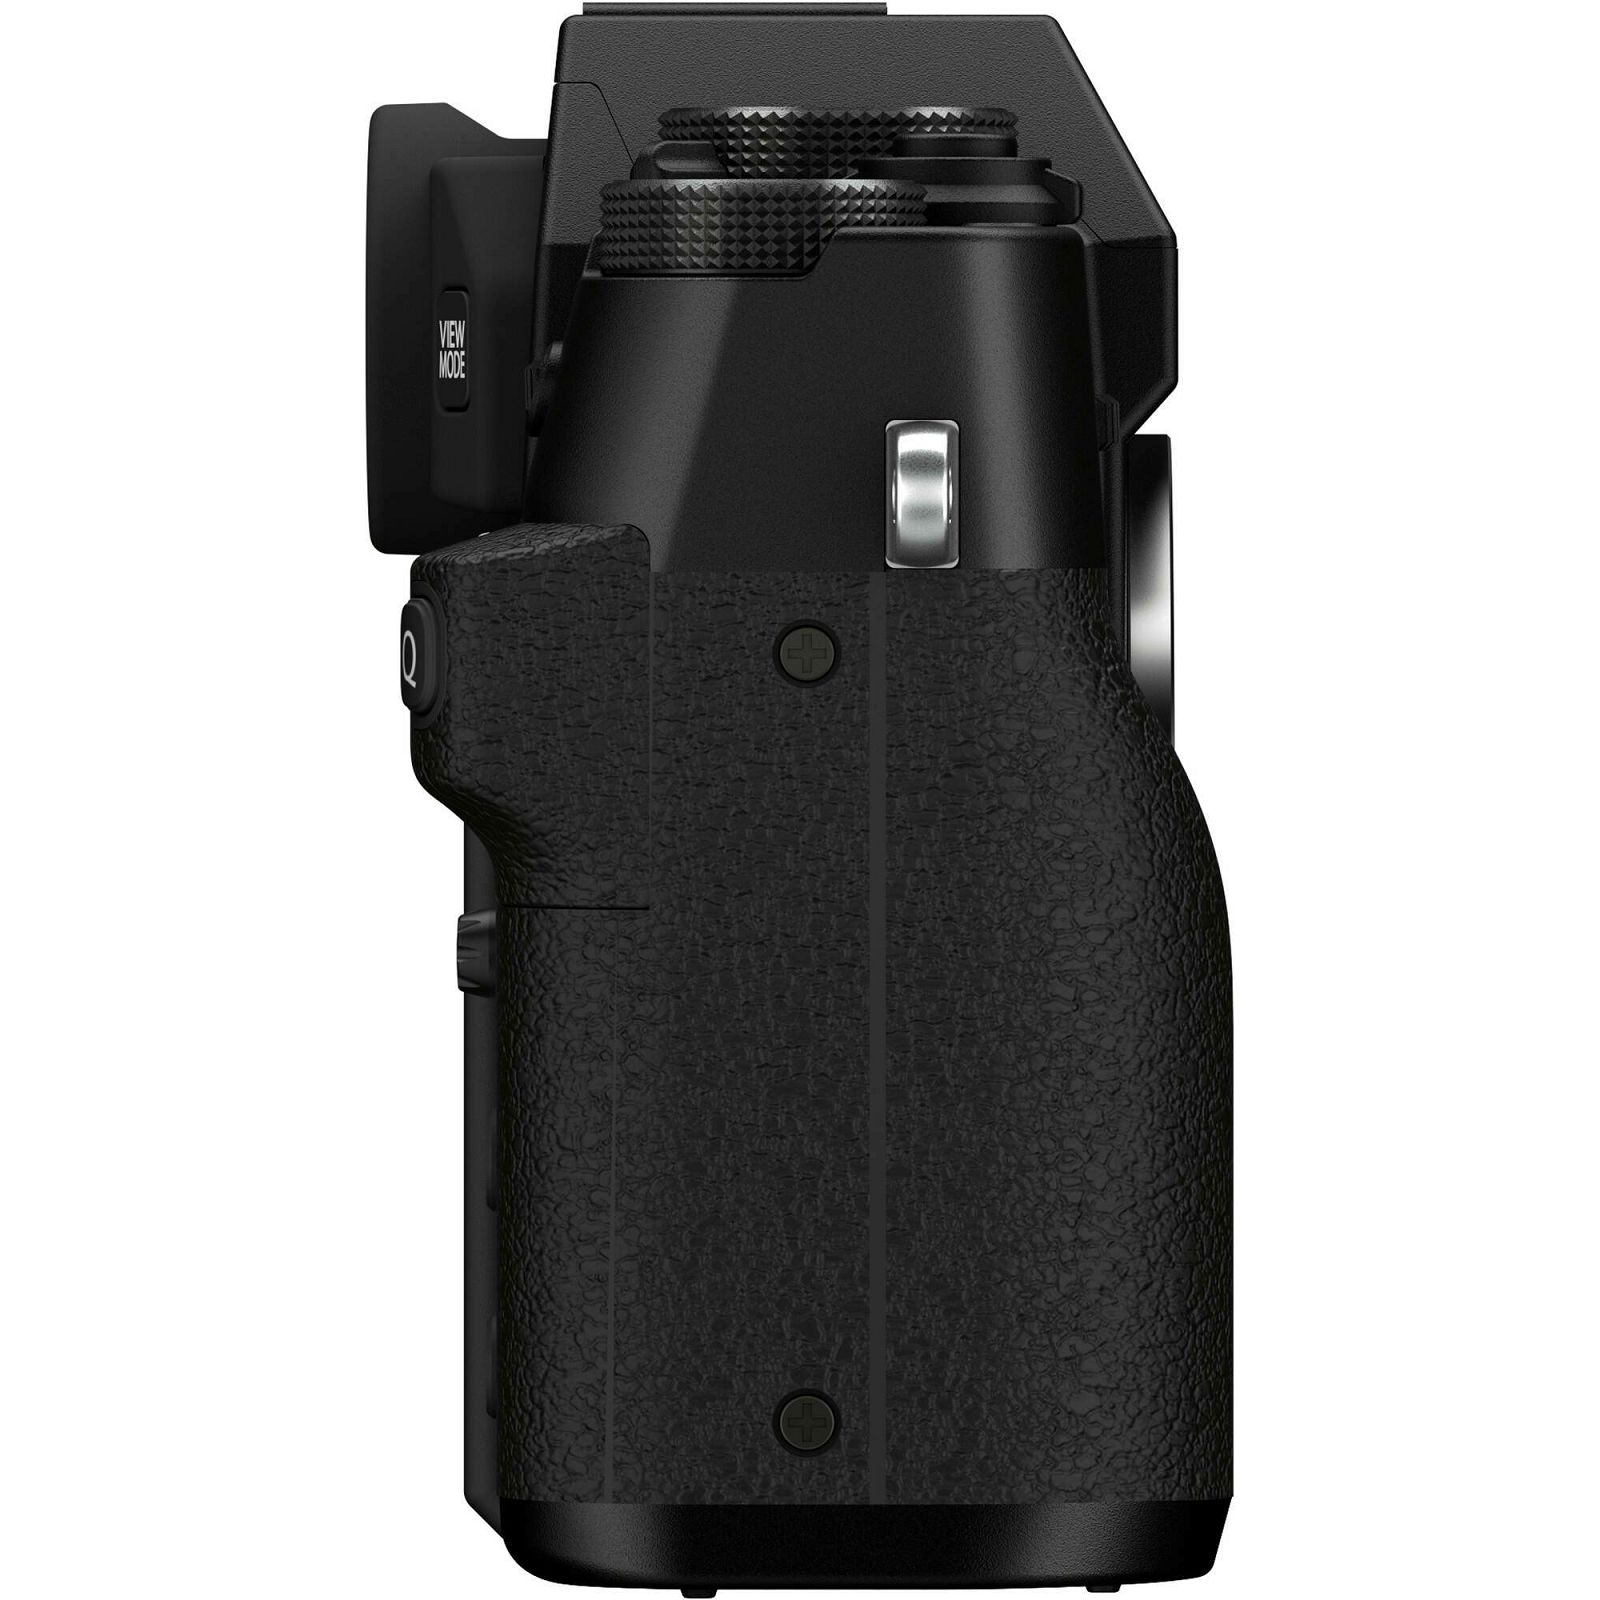 Fujifilm X-T30 II + XC 15-45mm f/3.5-5.6 OIS PZ Black crni bezrcalni digitalni fotoaparat